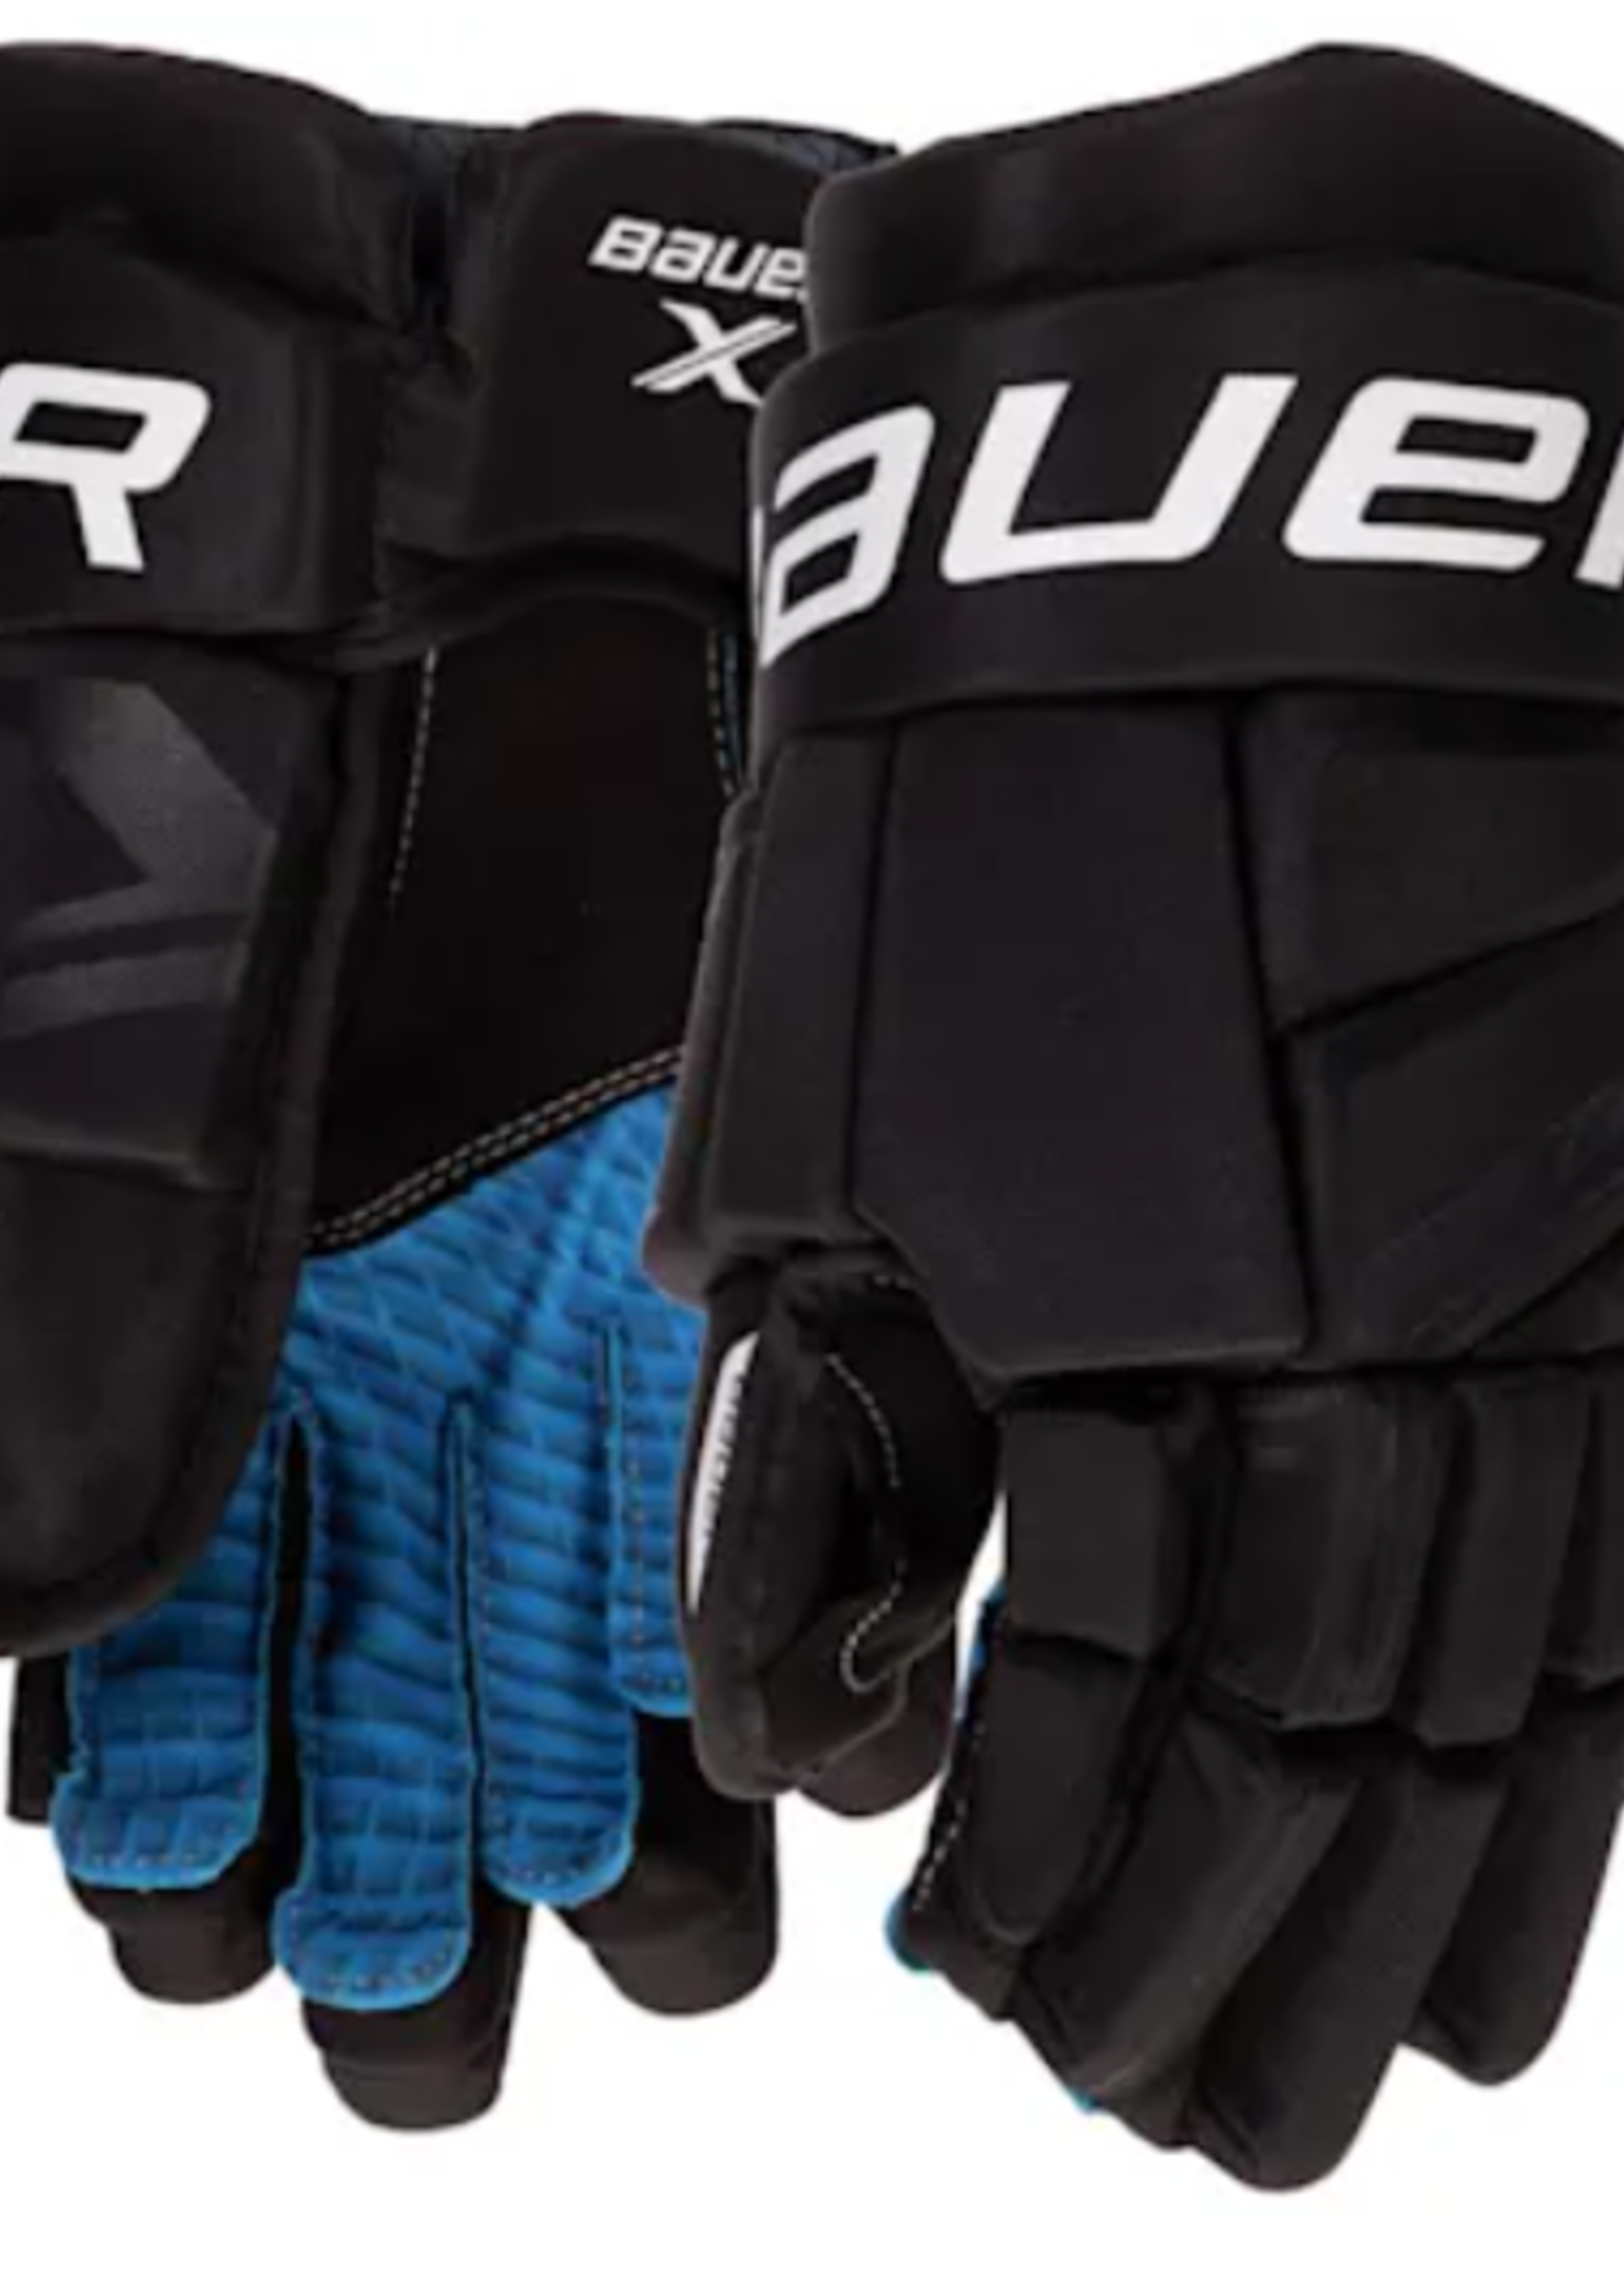 BAU S21 Bauer X Yth Glove